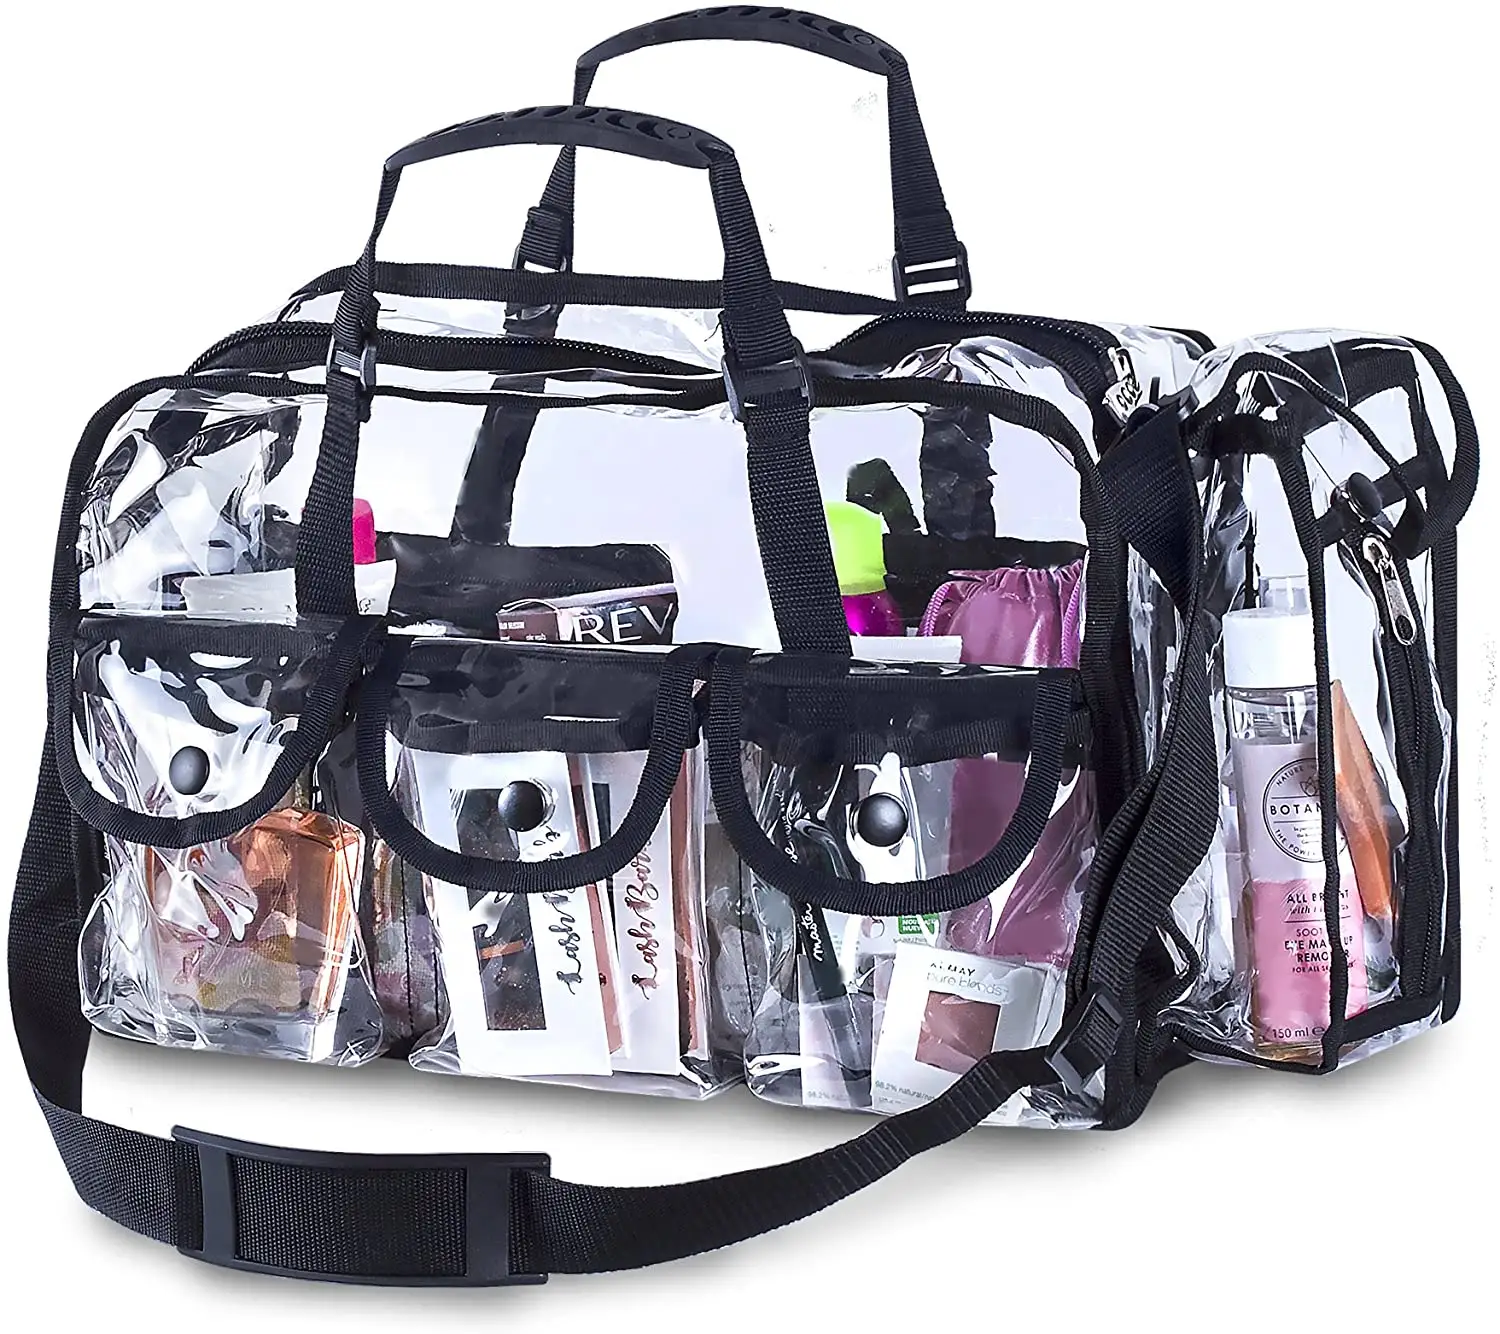 Spot low moq 25L супер большая Прозрачная ПВХ Дорожная сумка для макияжа с 6 карманами через плечо косметика